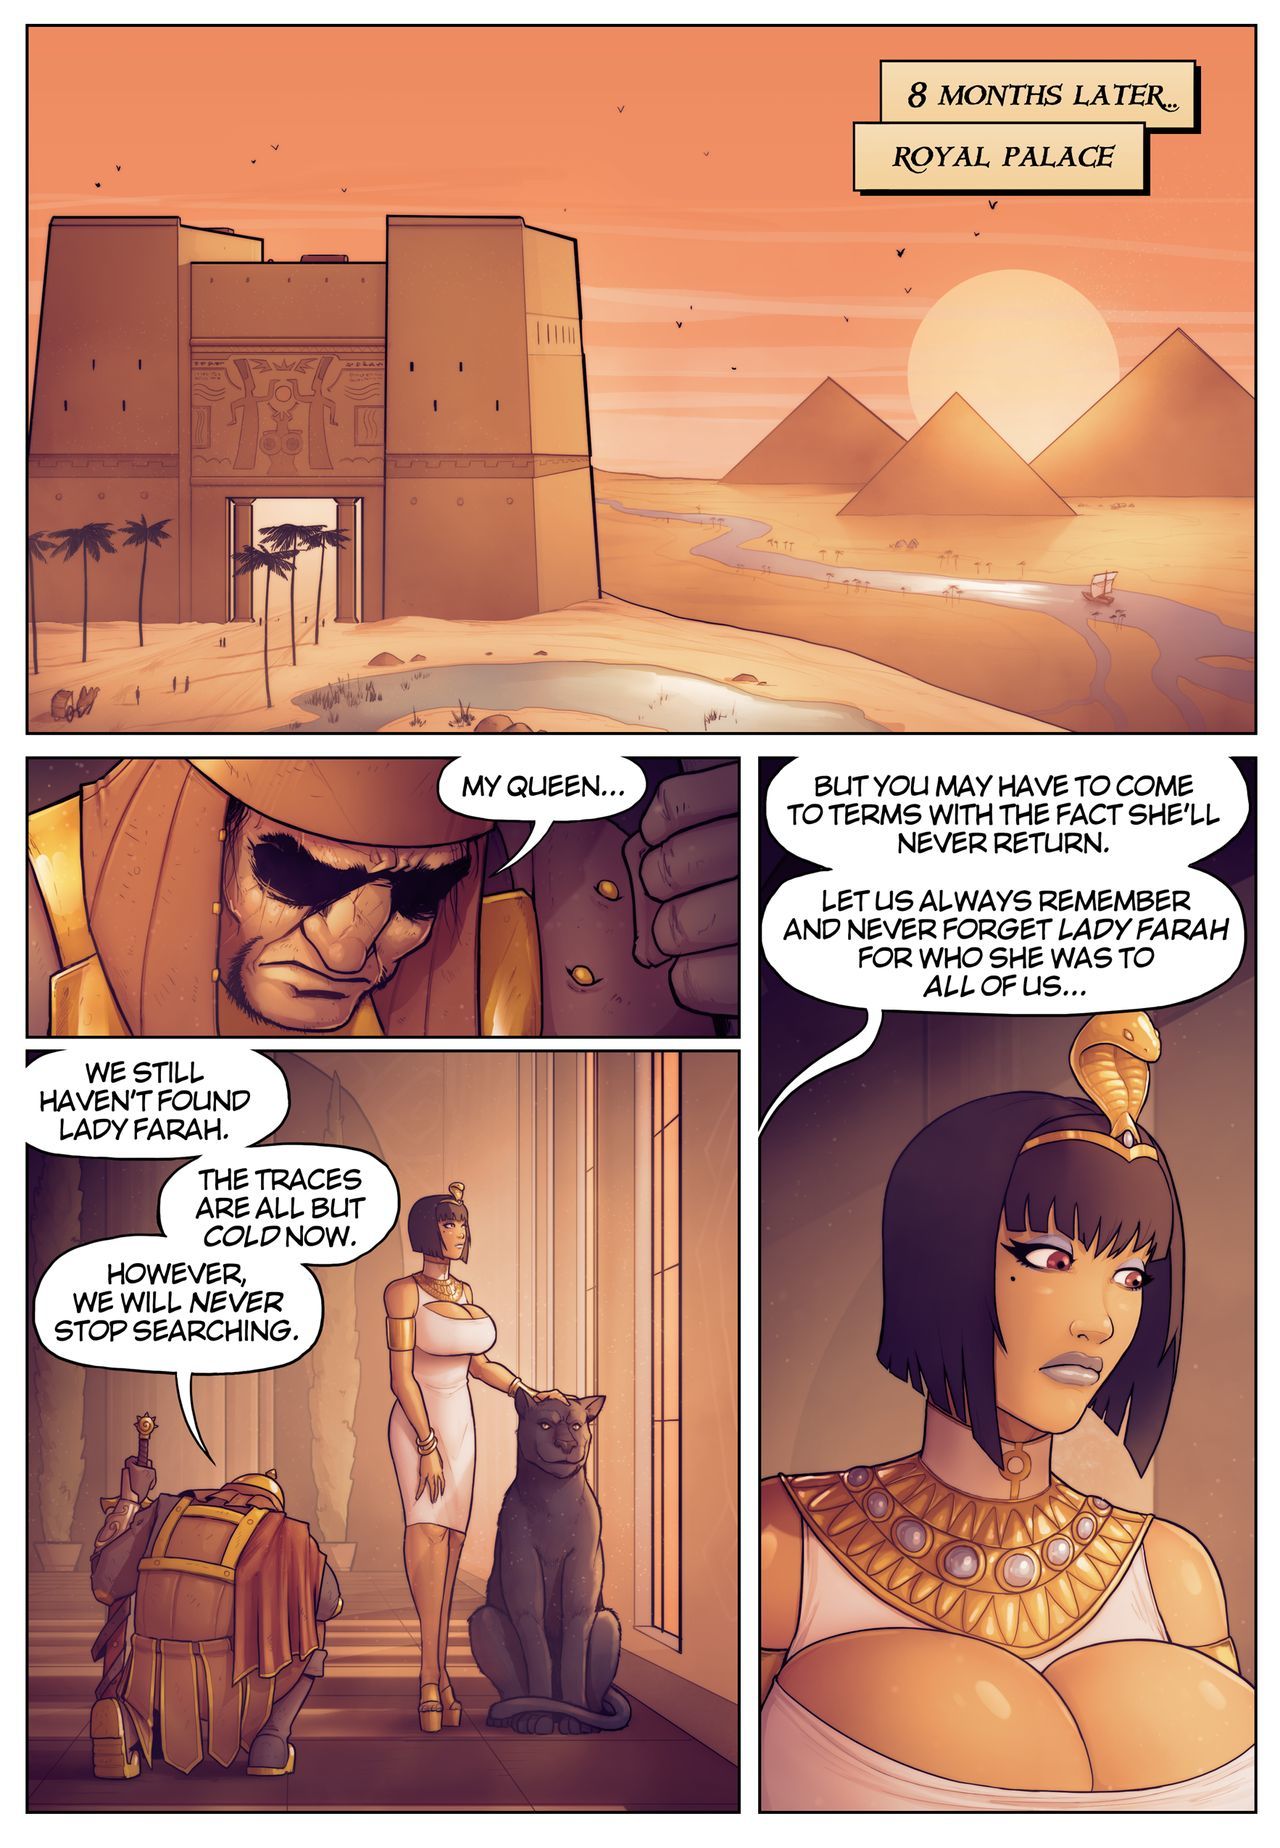 Legende der queen opala Geschichten der pharah: in die shadow der anubis*